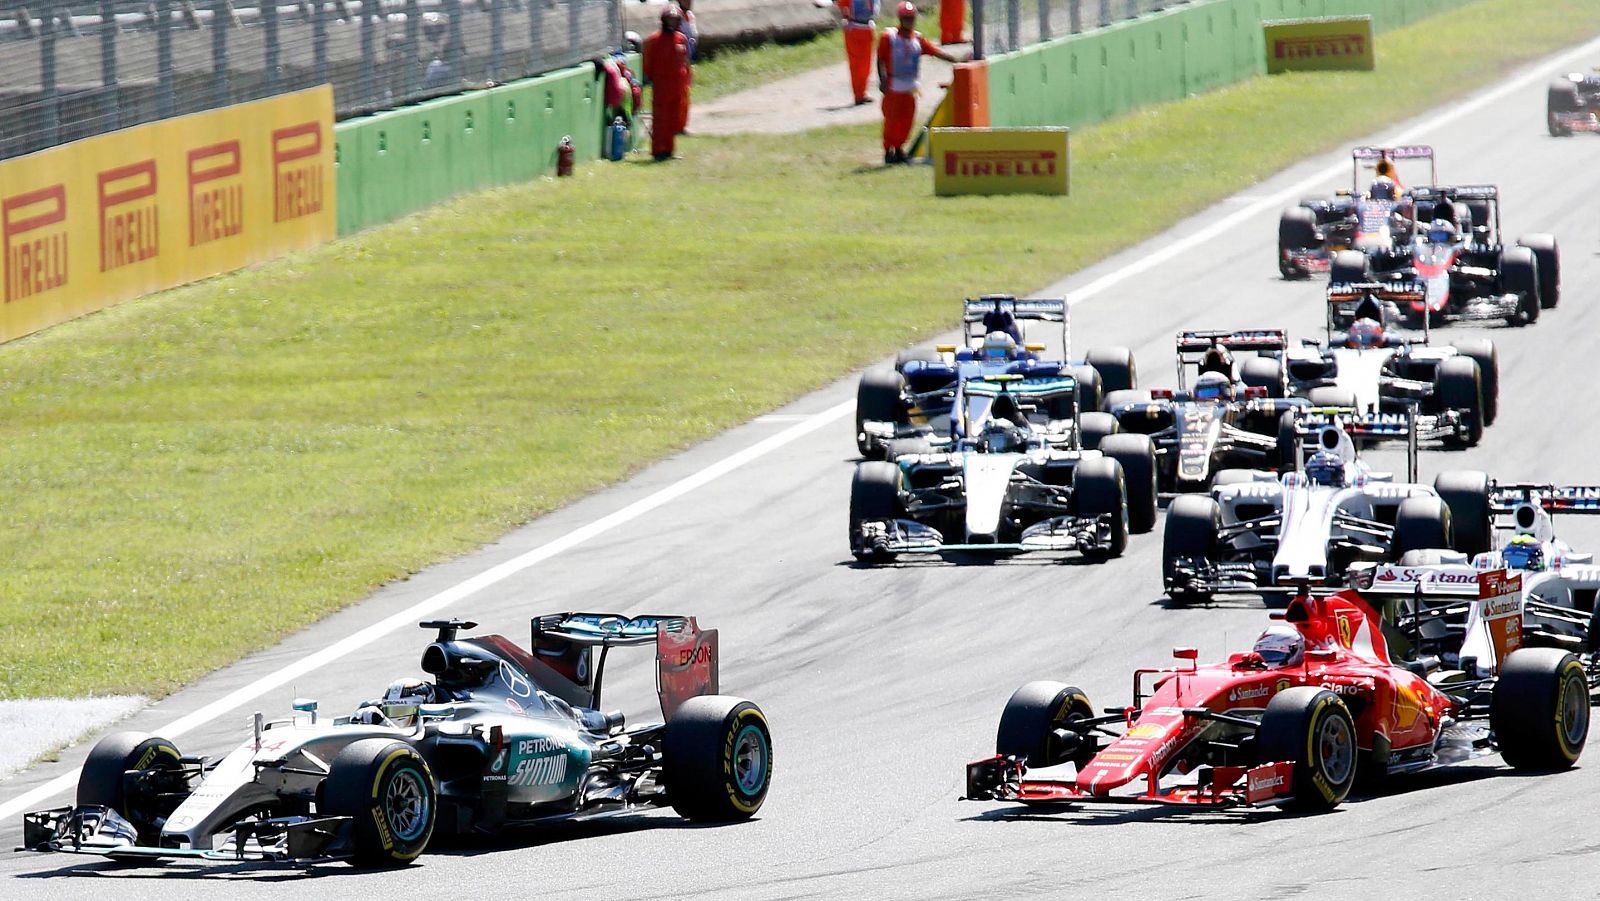 Lewis Hamilton (Mercedes) lidera la carrera de Monza desde la salida seguido de Vettel (Ferrari)